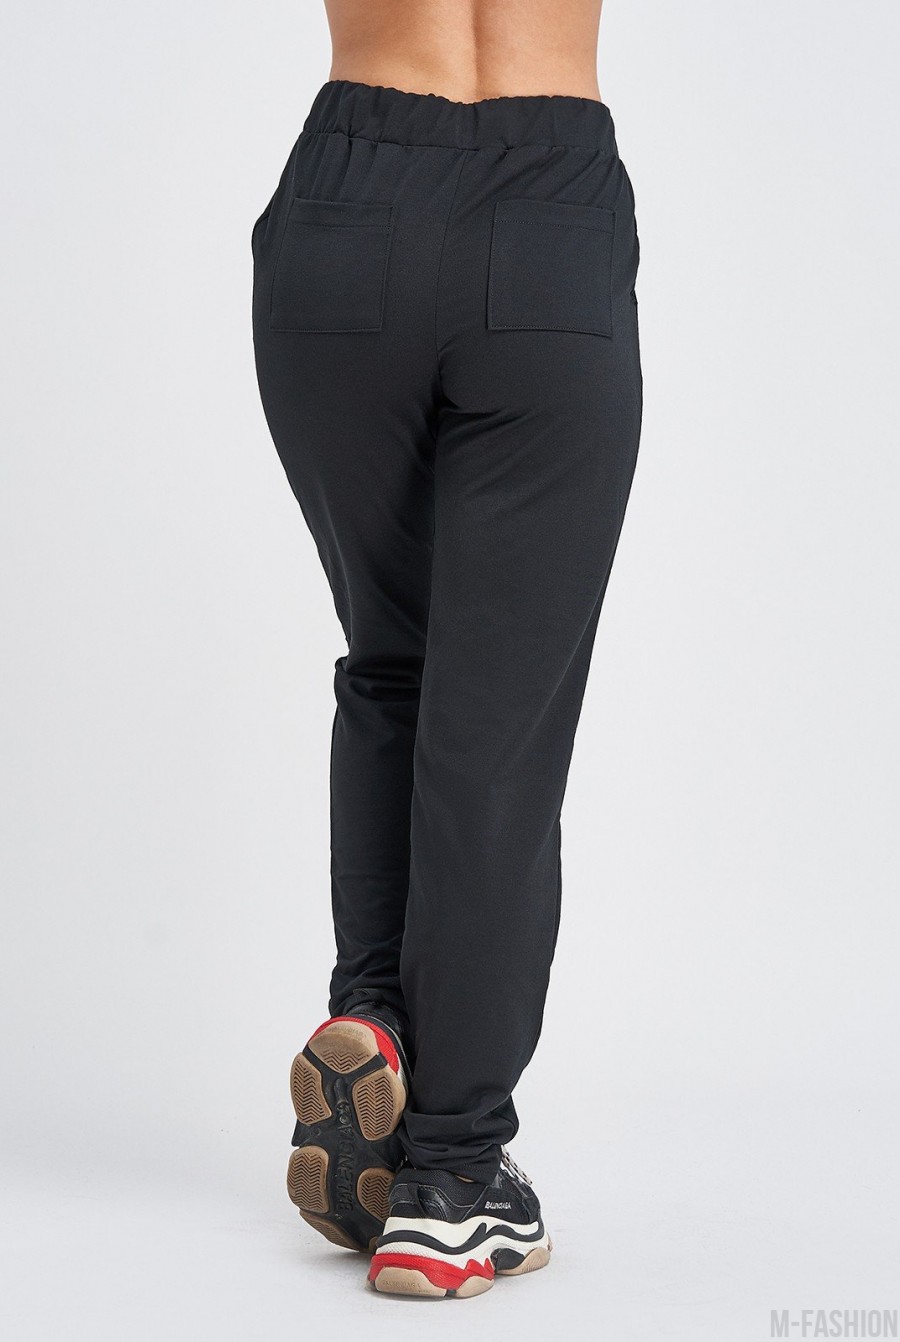 Черные штаны с карманами выполненные из трикотажа- Фото 4